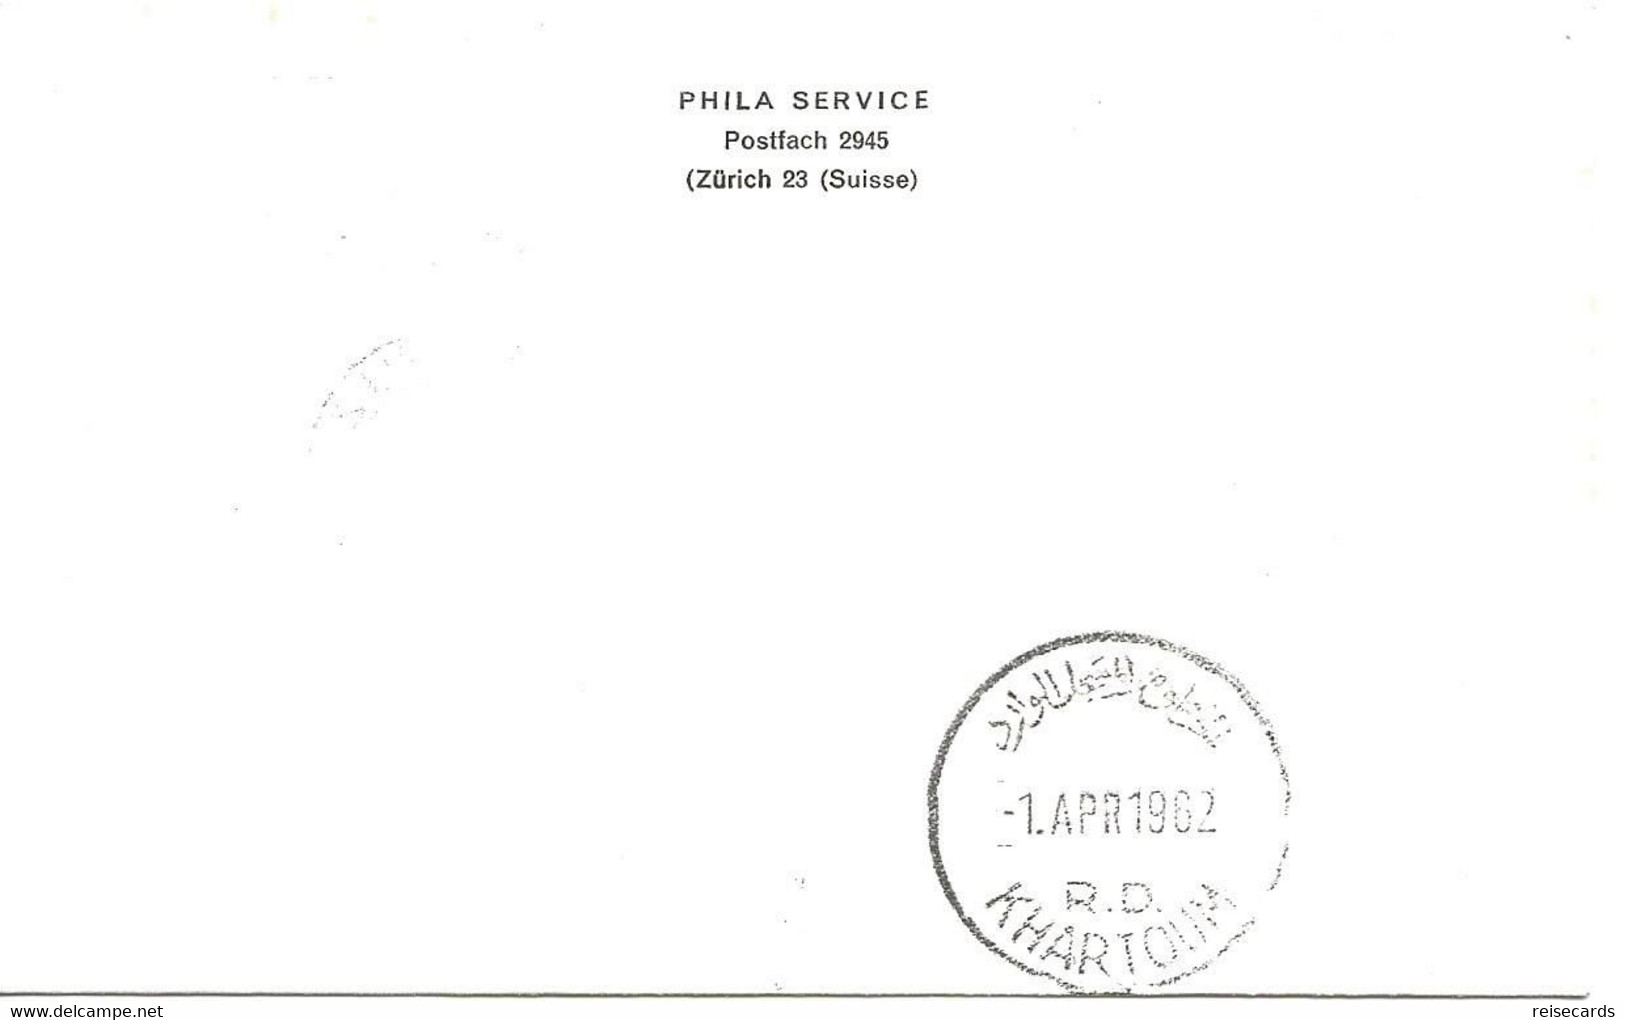 Liechtenstein: 1962 Swissair Air Mail Brief Zürich - Khartoum - Cartas & Documentos